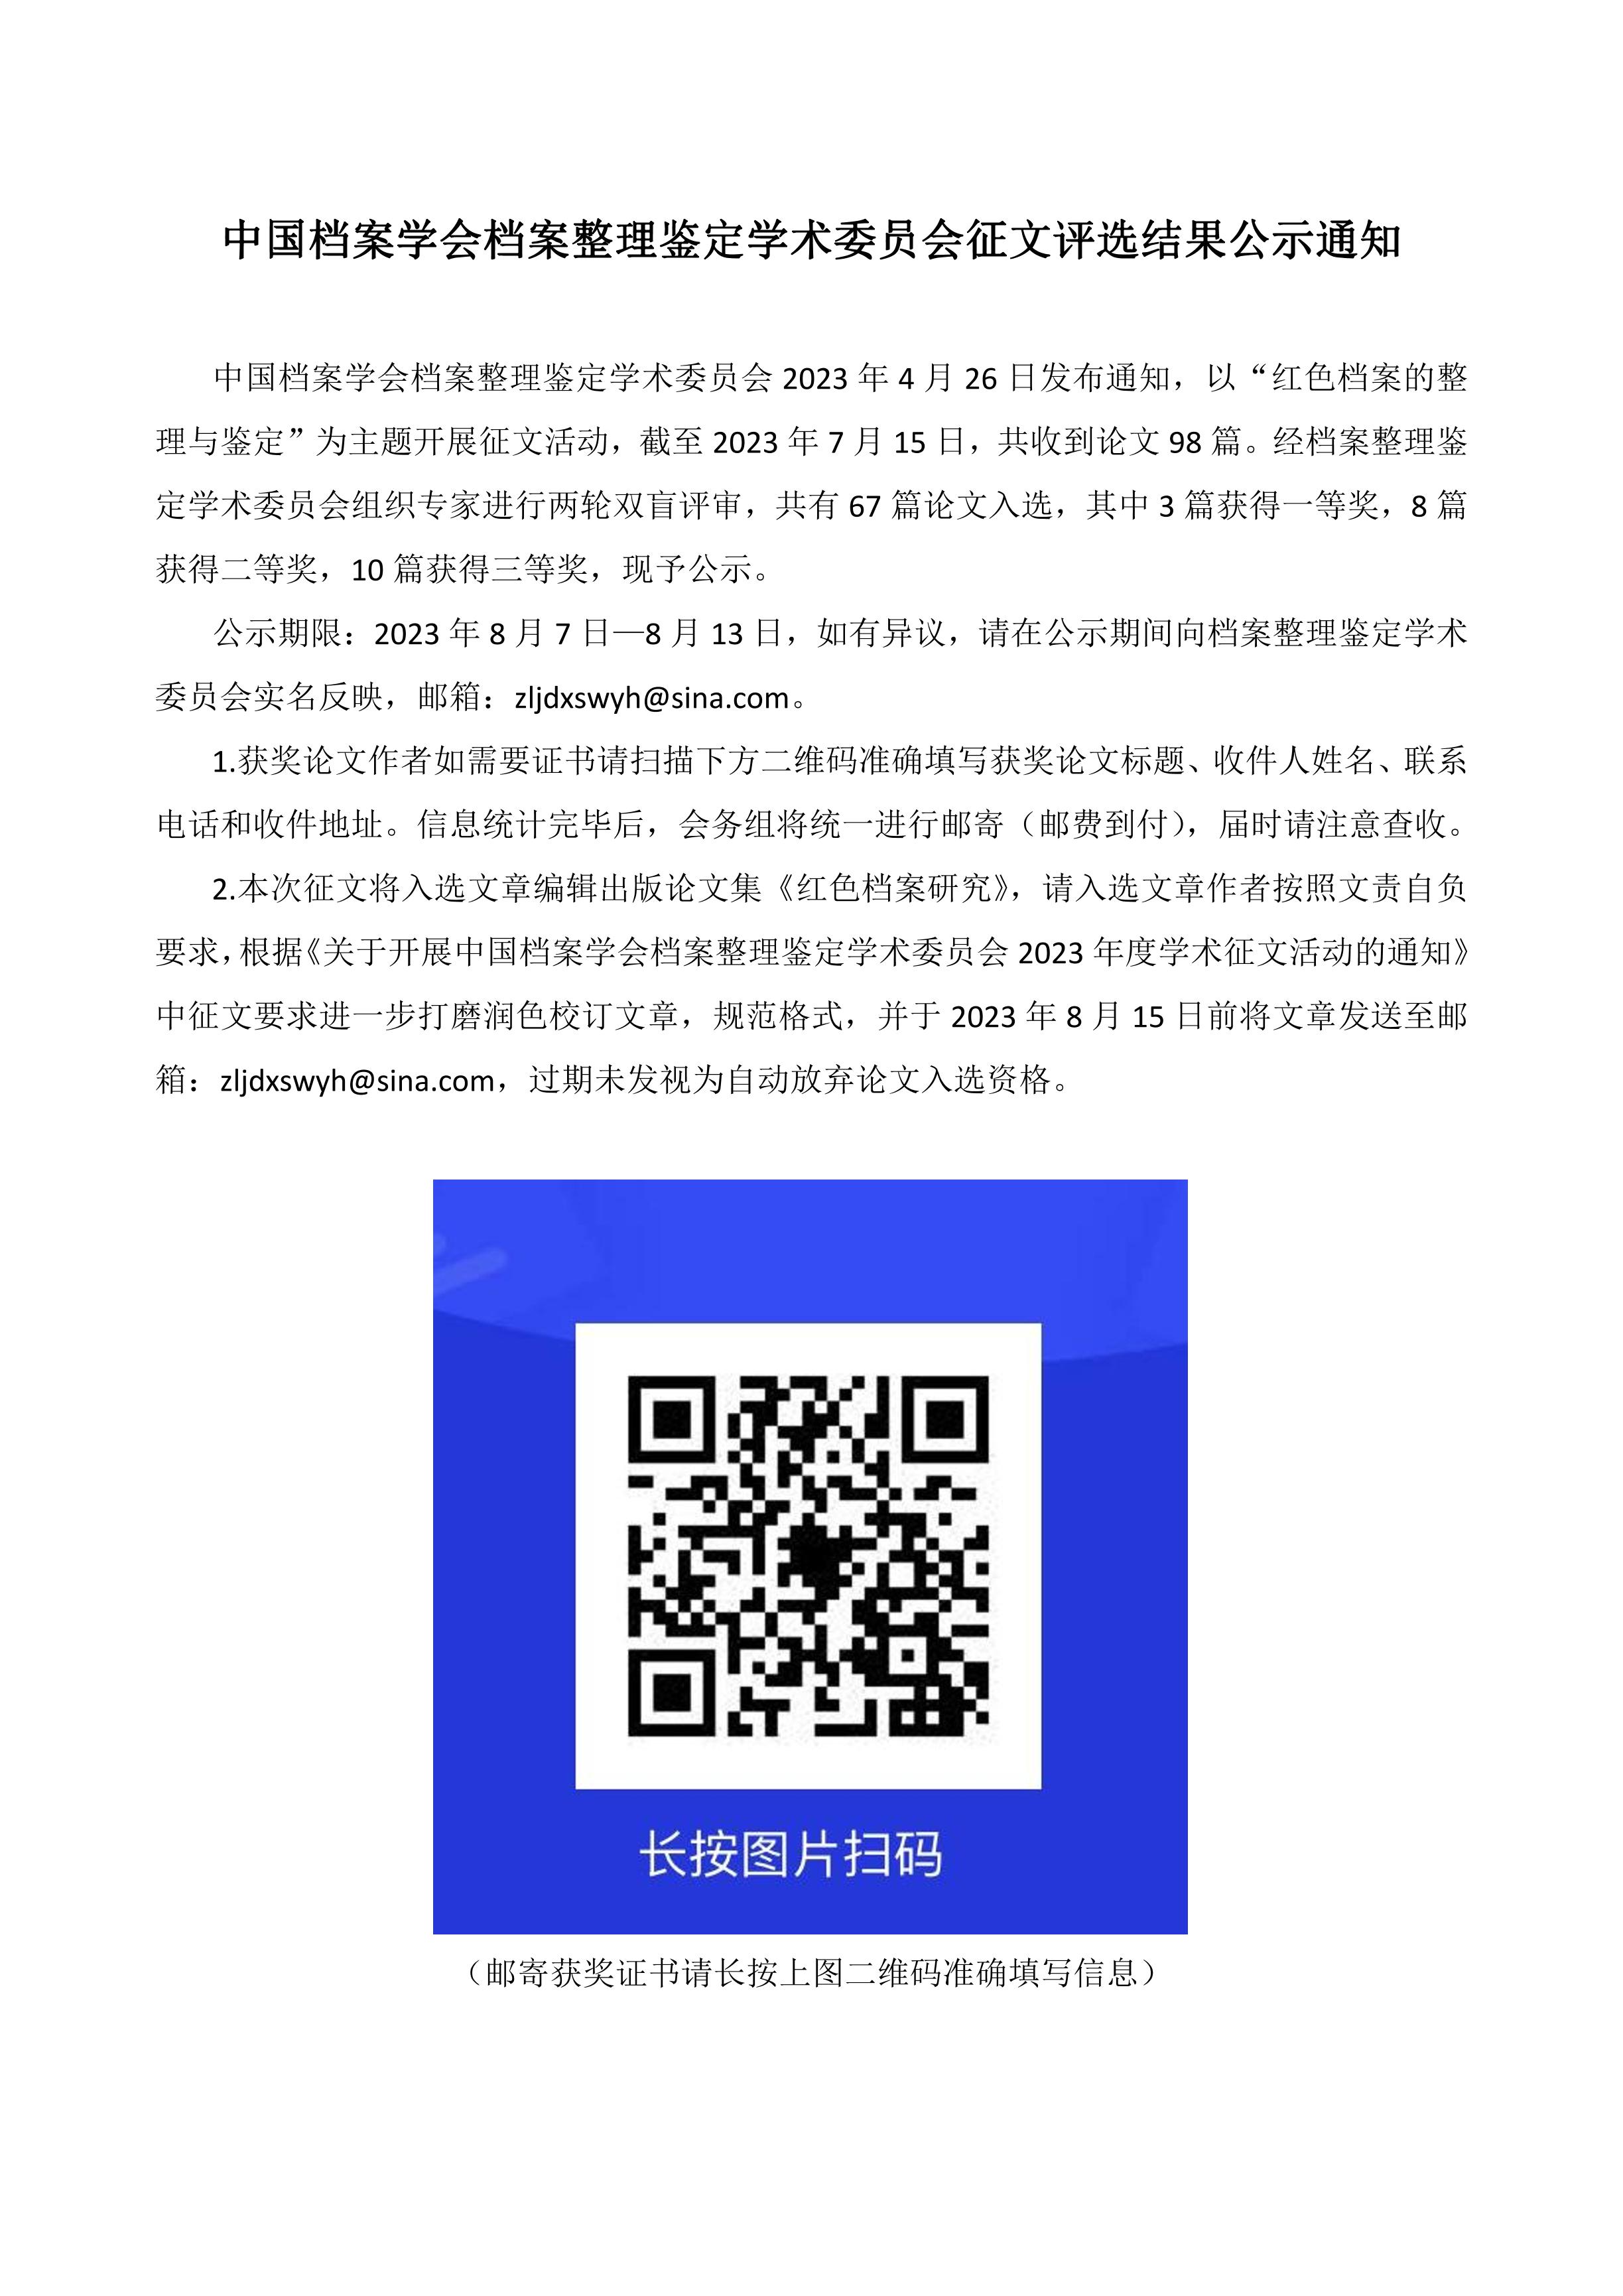 中国档案学会档案整理鉴定学术委员会征文评选结果公示通知-0